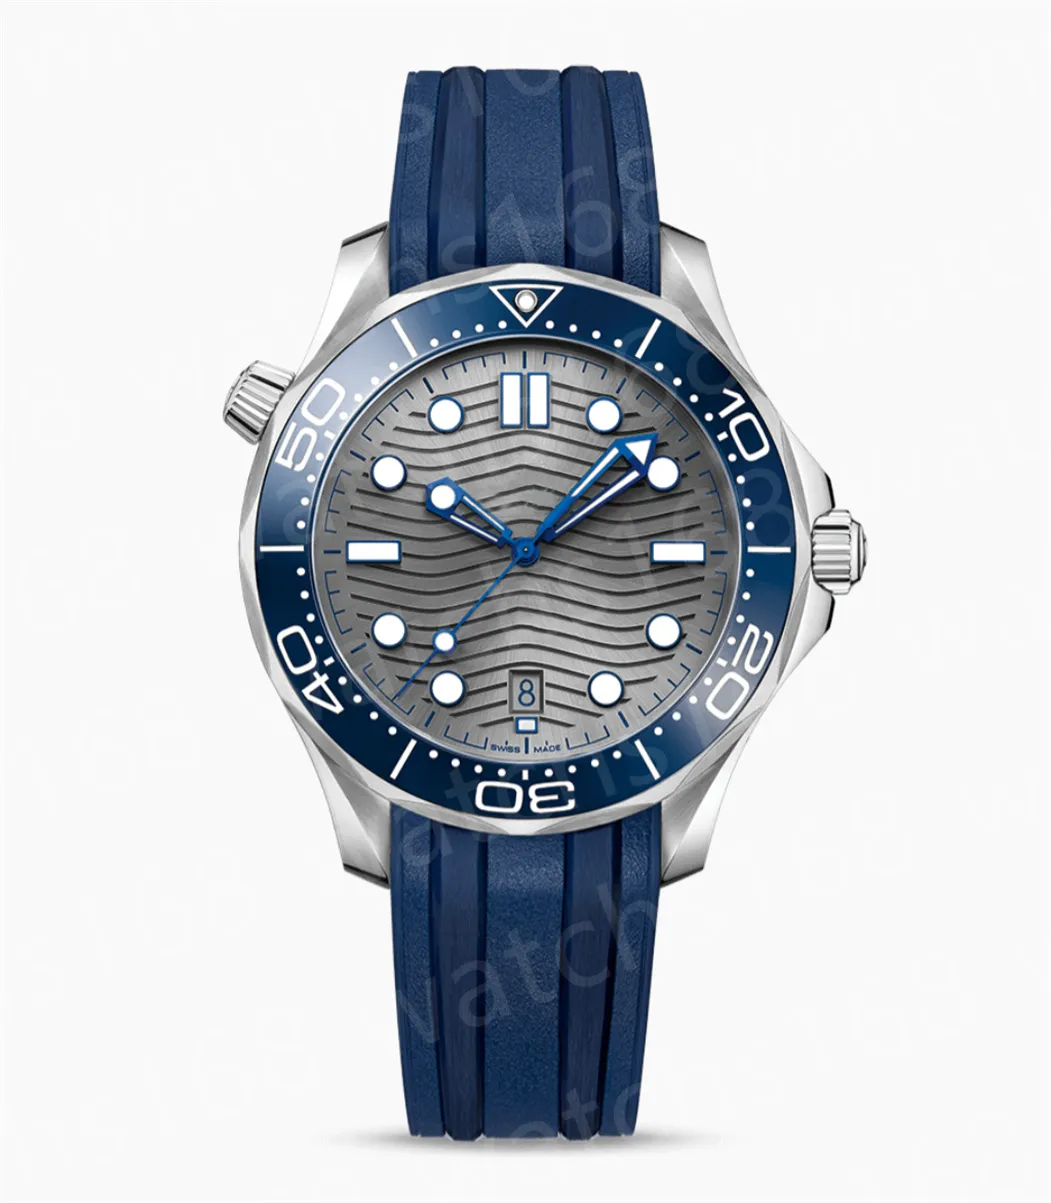 heren horloge designer horloges hoge kwaliteit mechanische automatische Seamaster luxe horloge datejust cerachrom chromalight 904L staal 2813 uurwerk u1 A